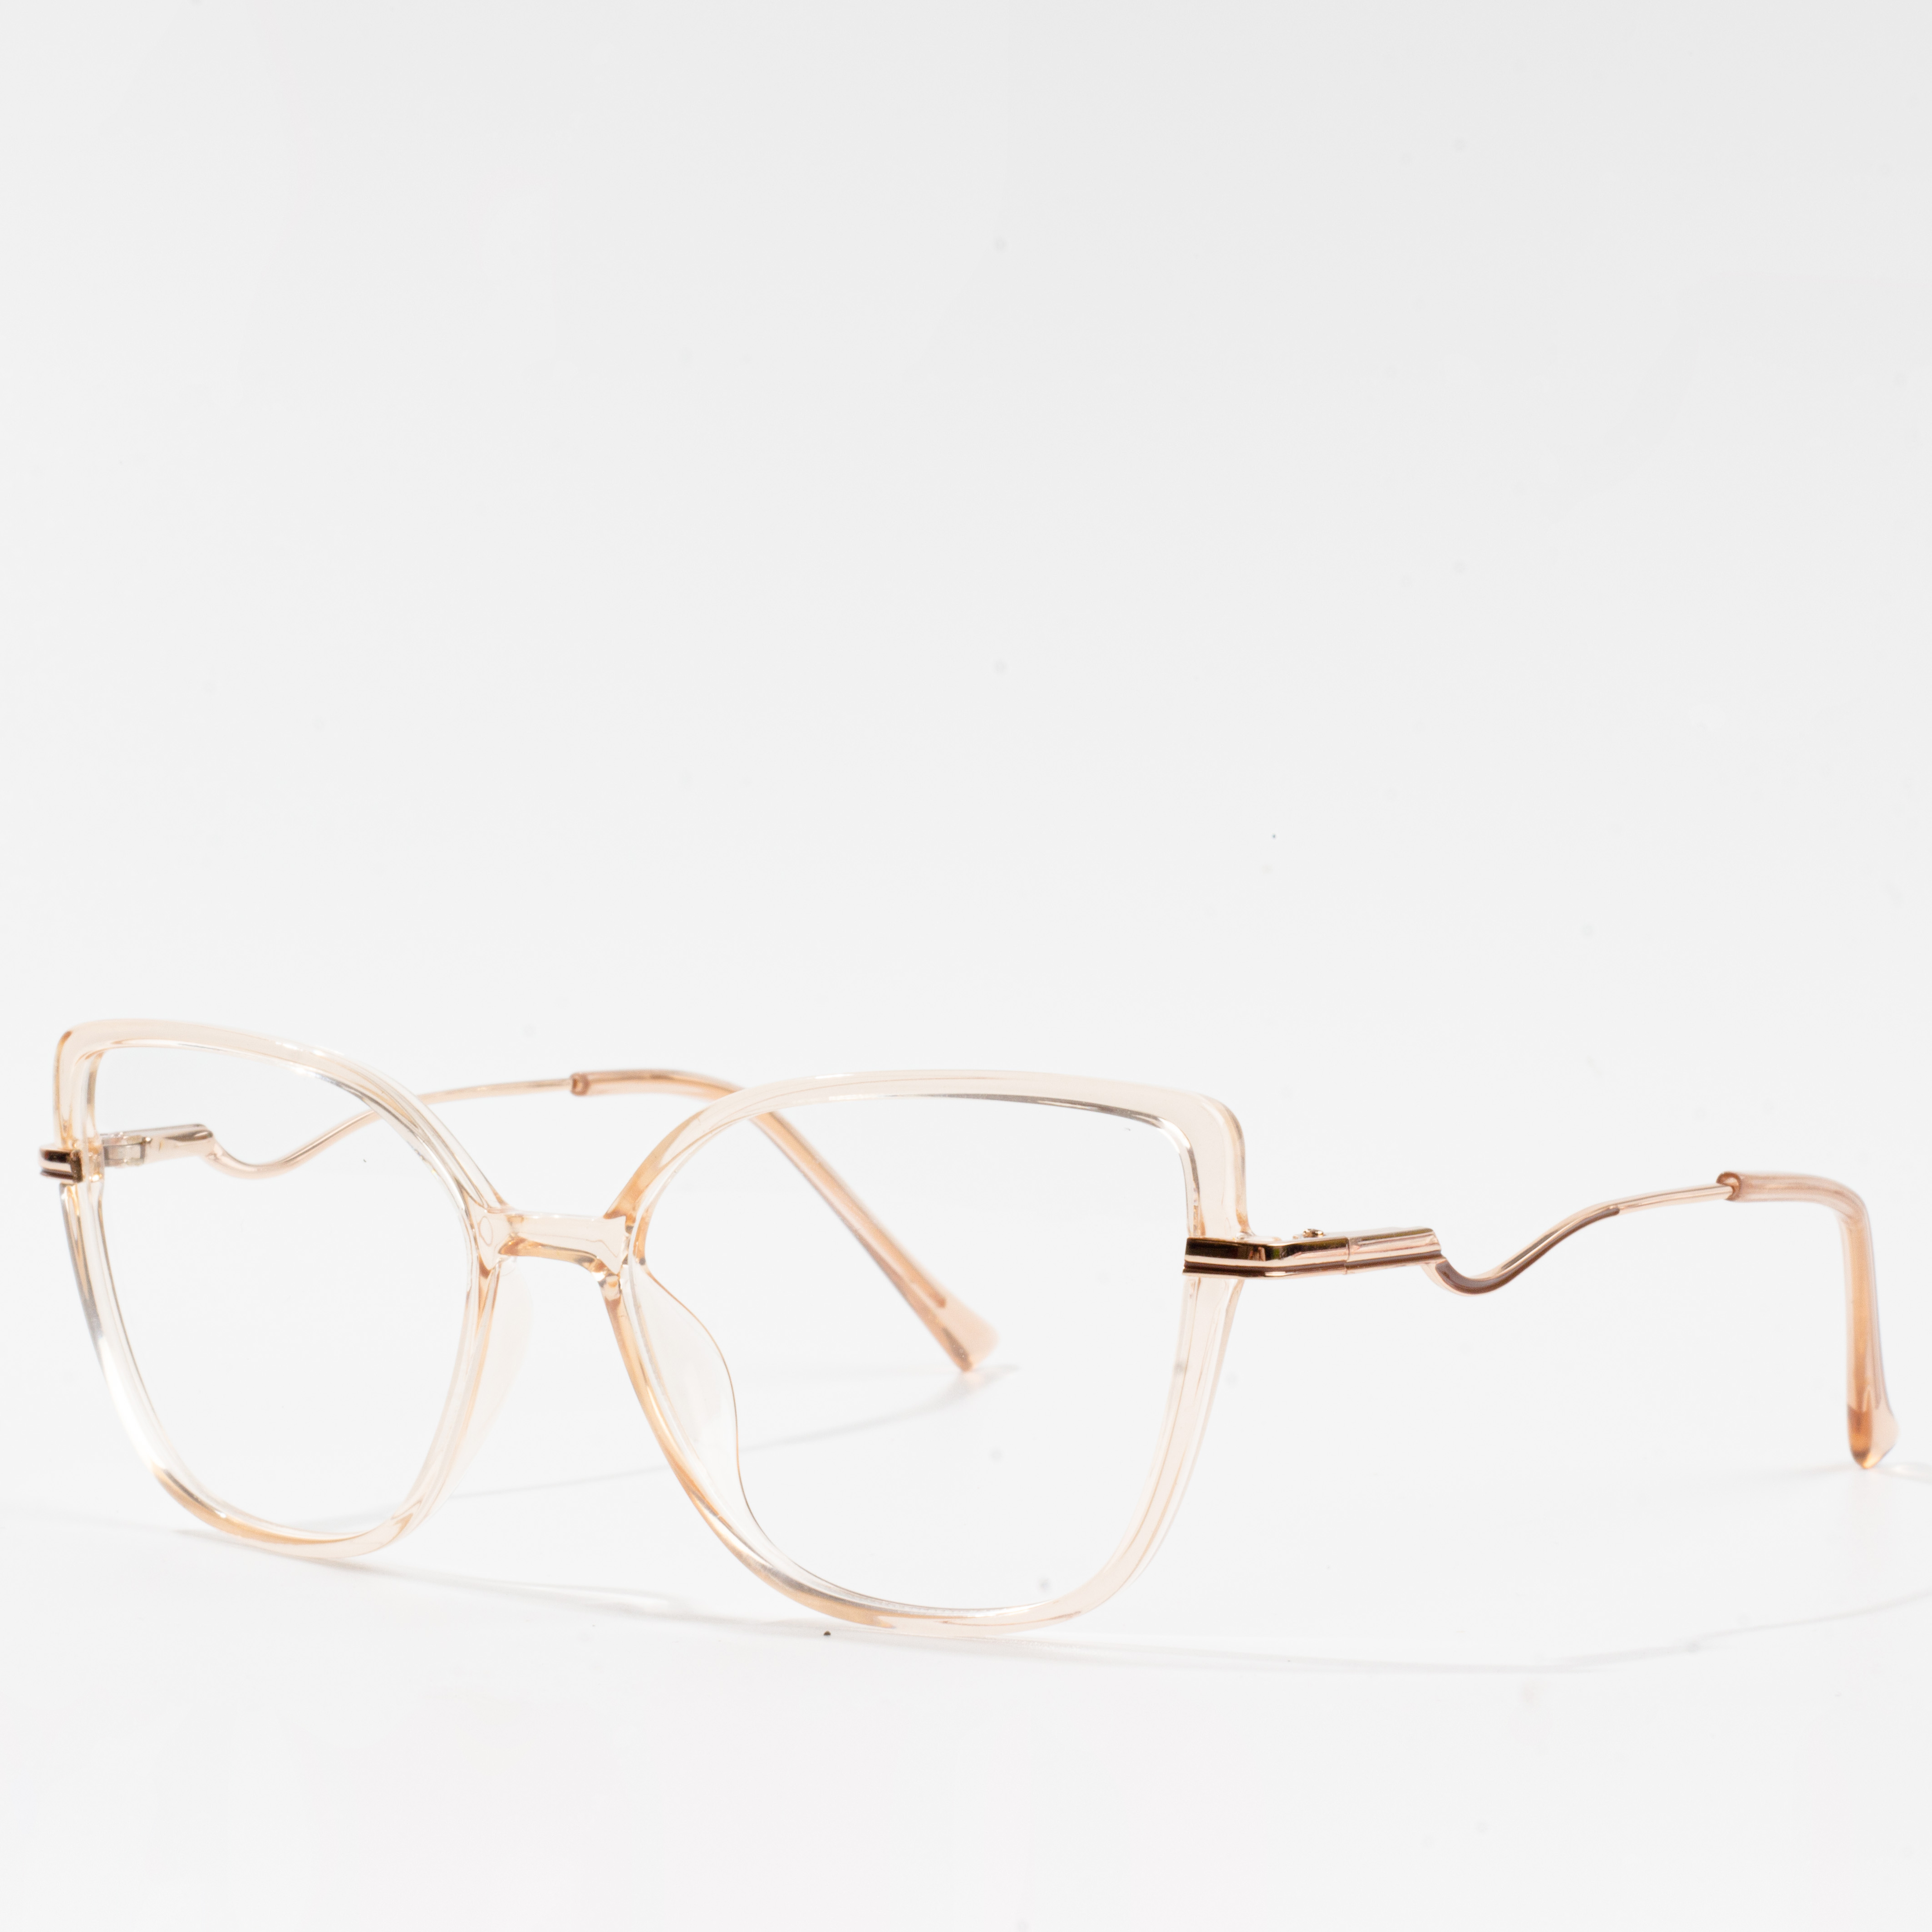 eyeglasses ffrâm cath